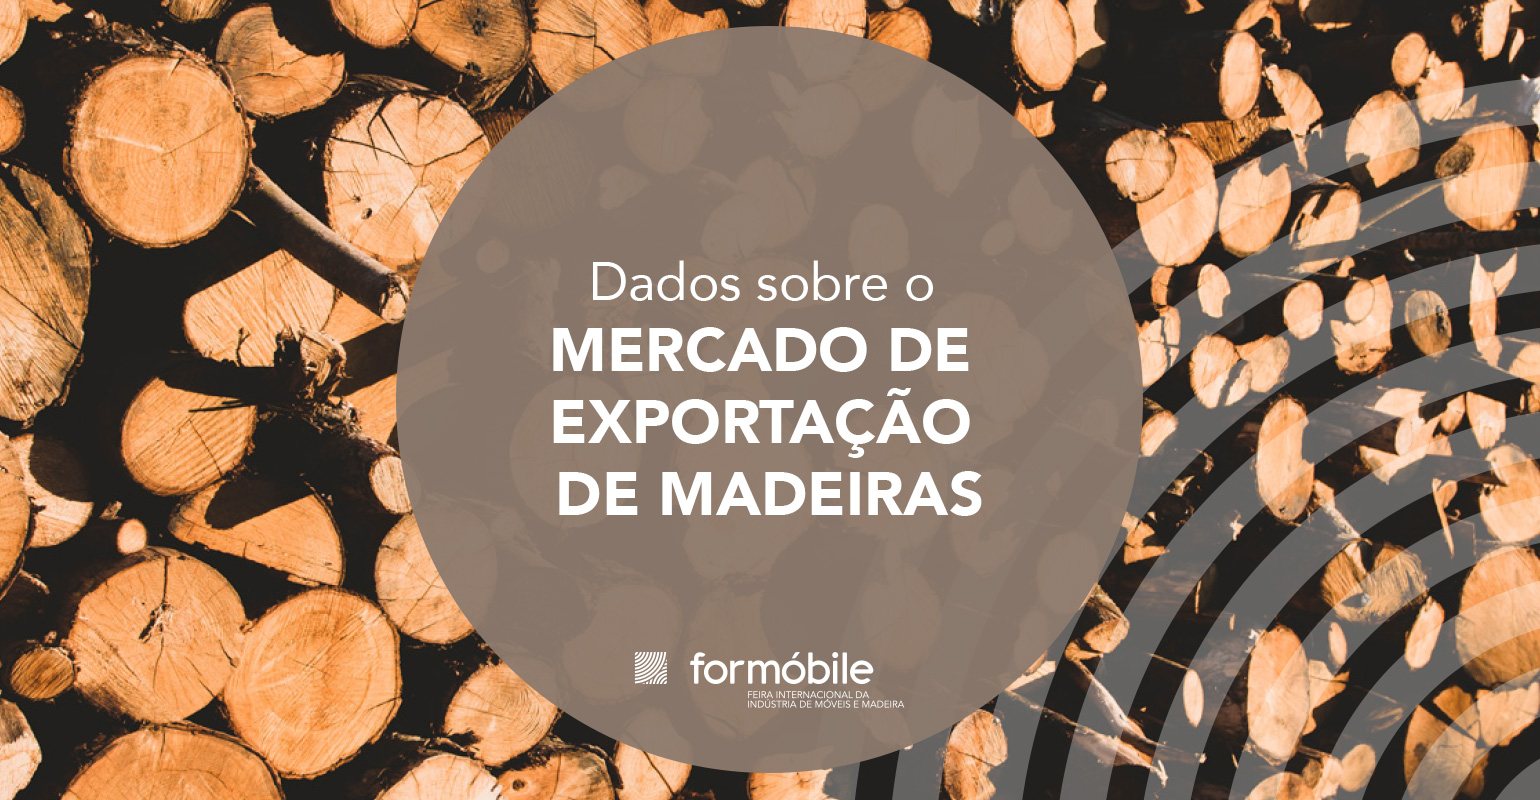 Index - Indústria, Comércio e Exportação de Madeiras Eireli